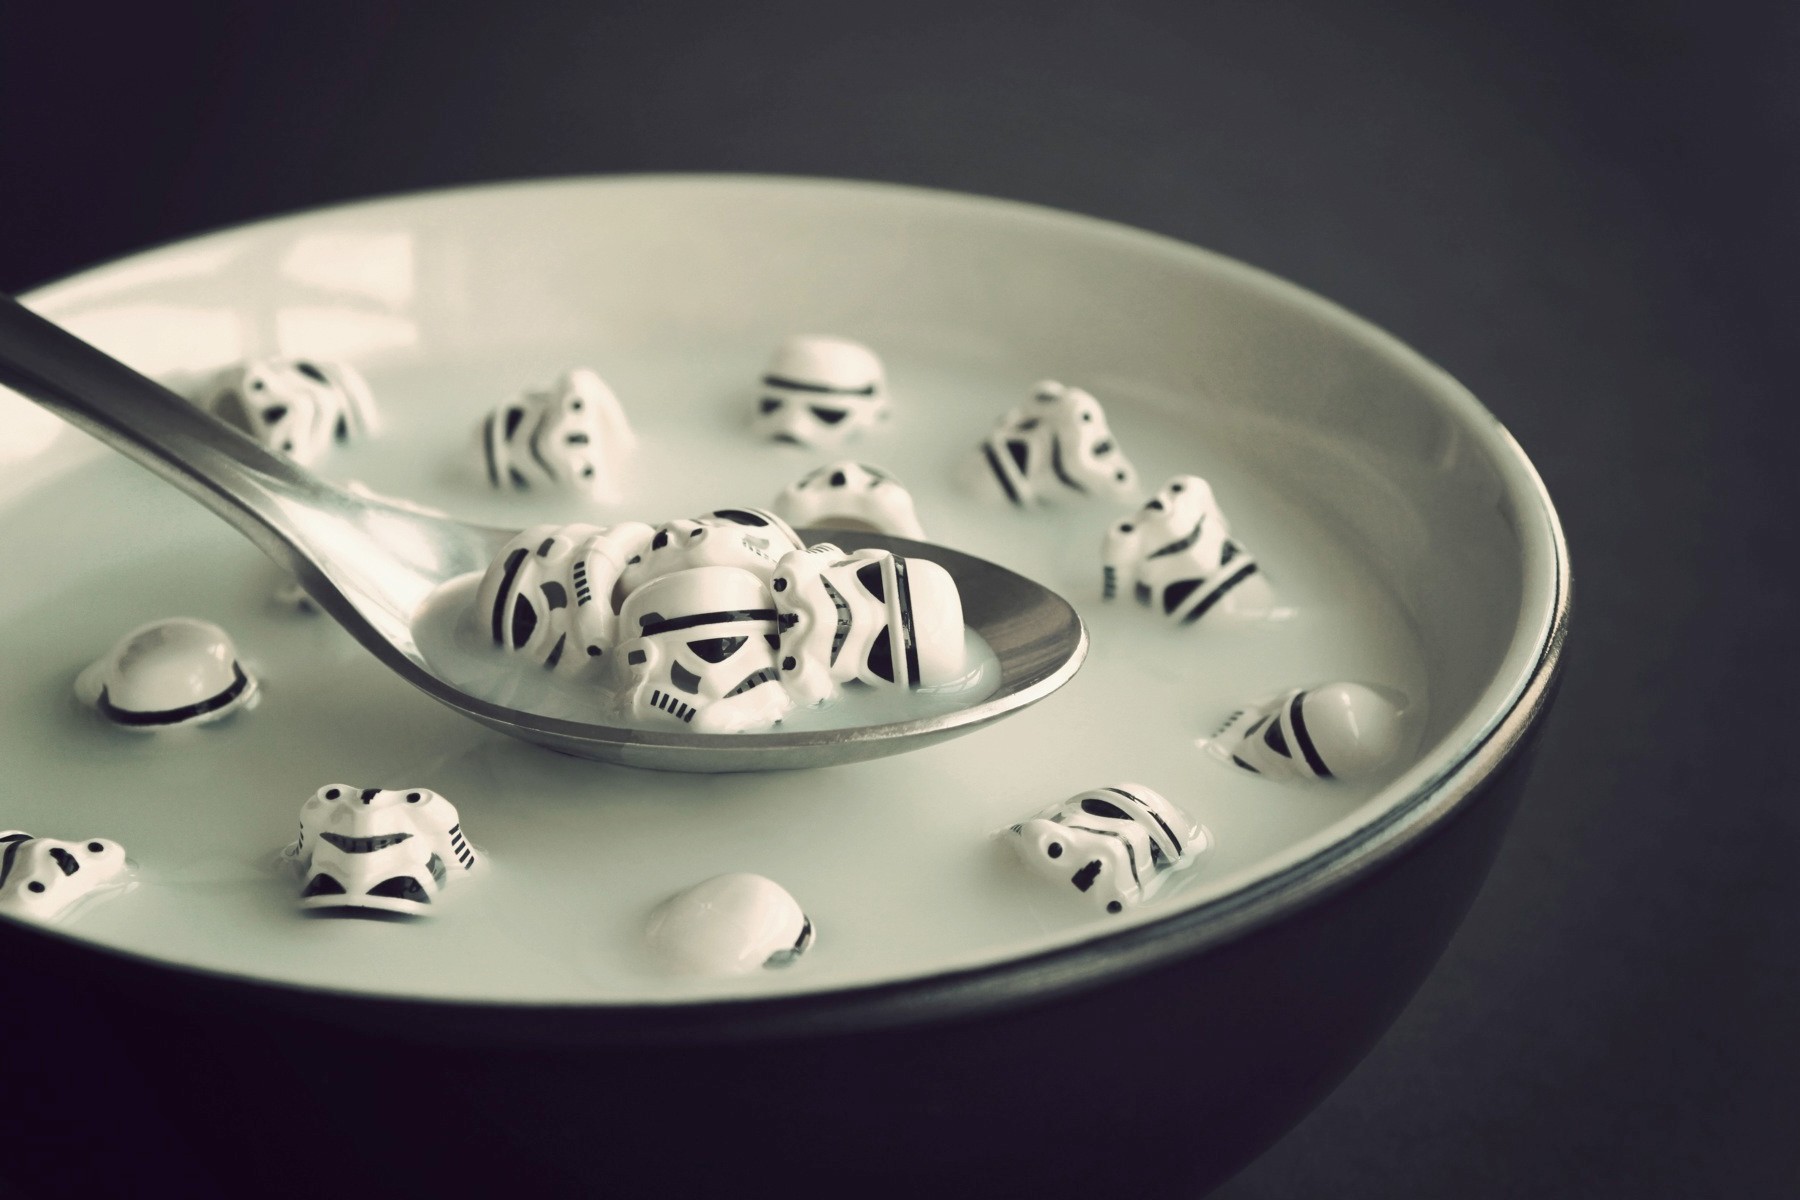 Star Wars Star Wars Humor Spoon Bowls 1800x1200